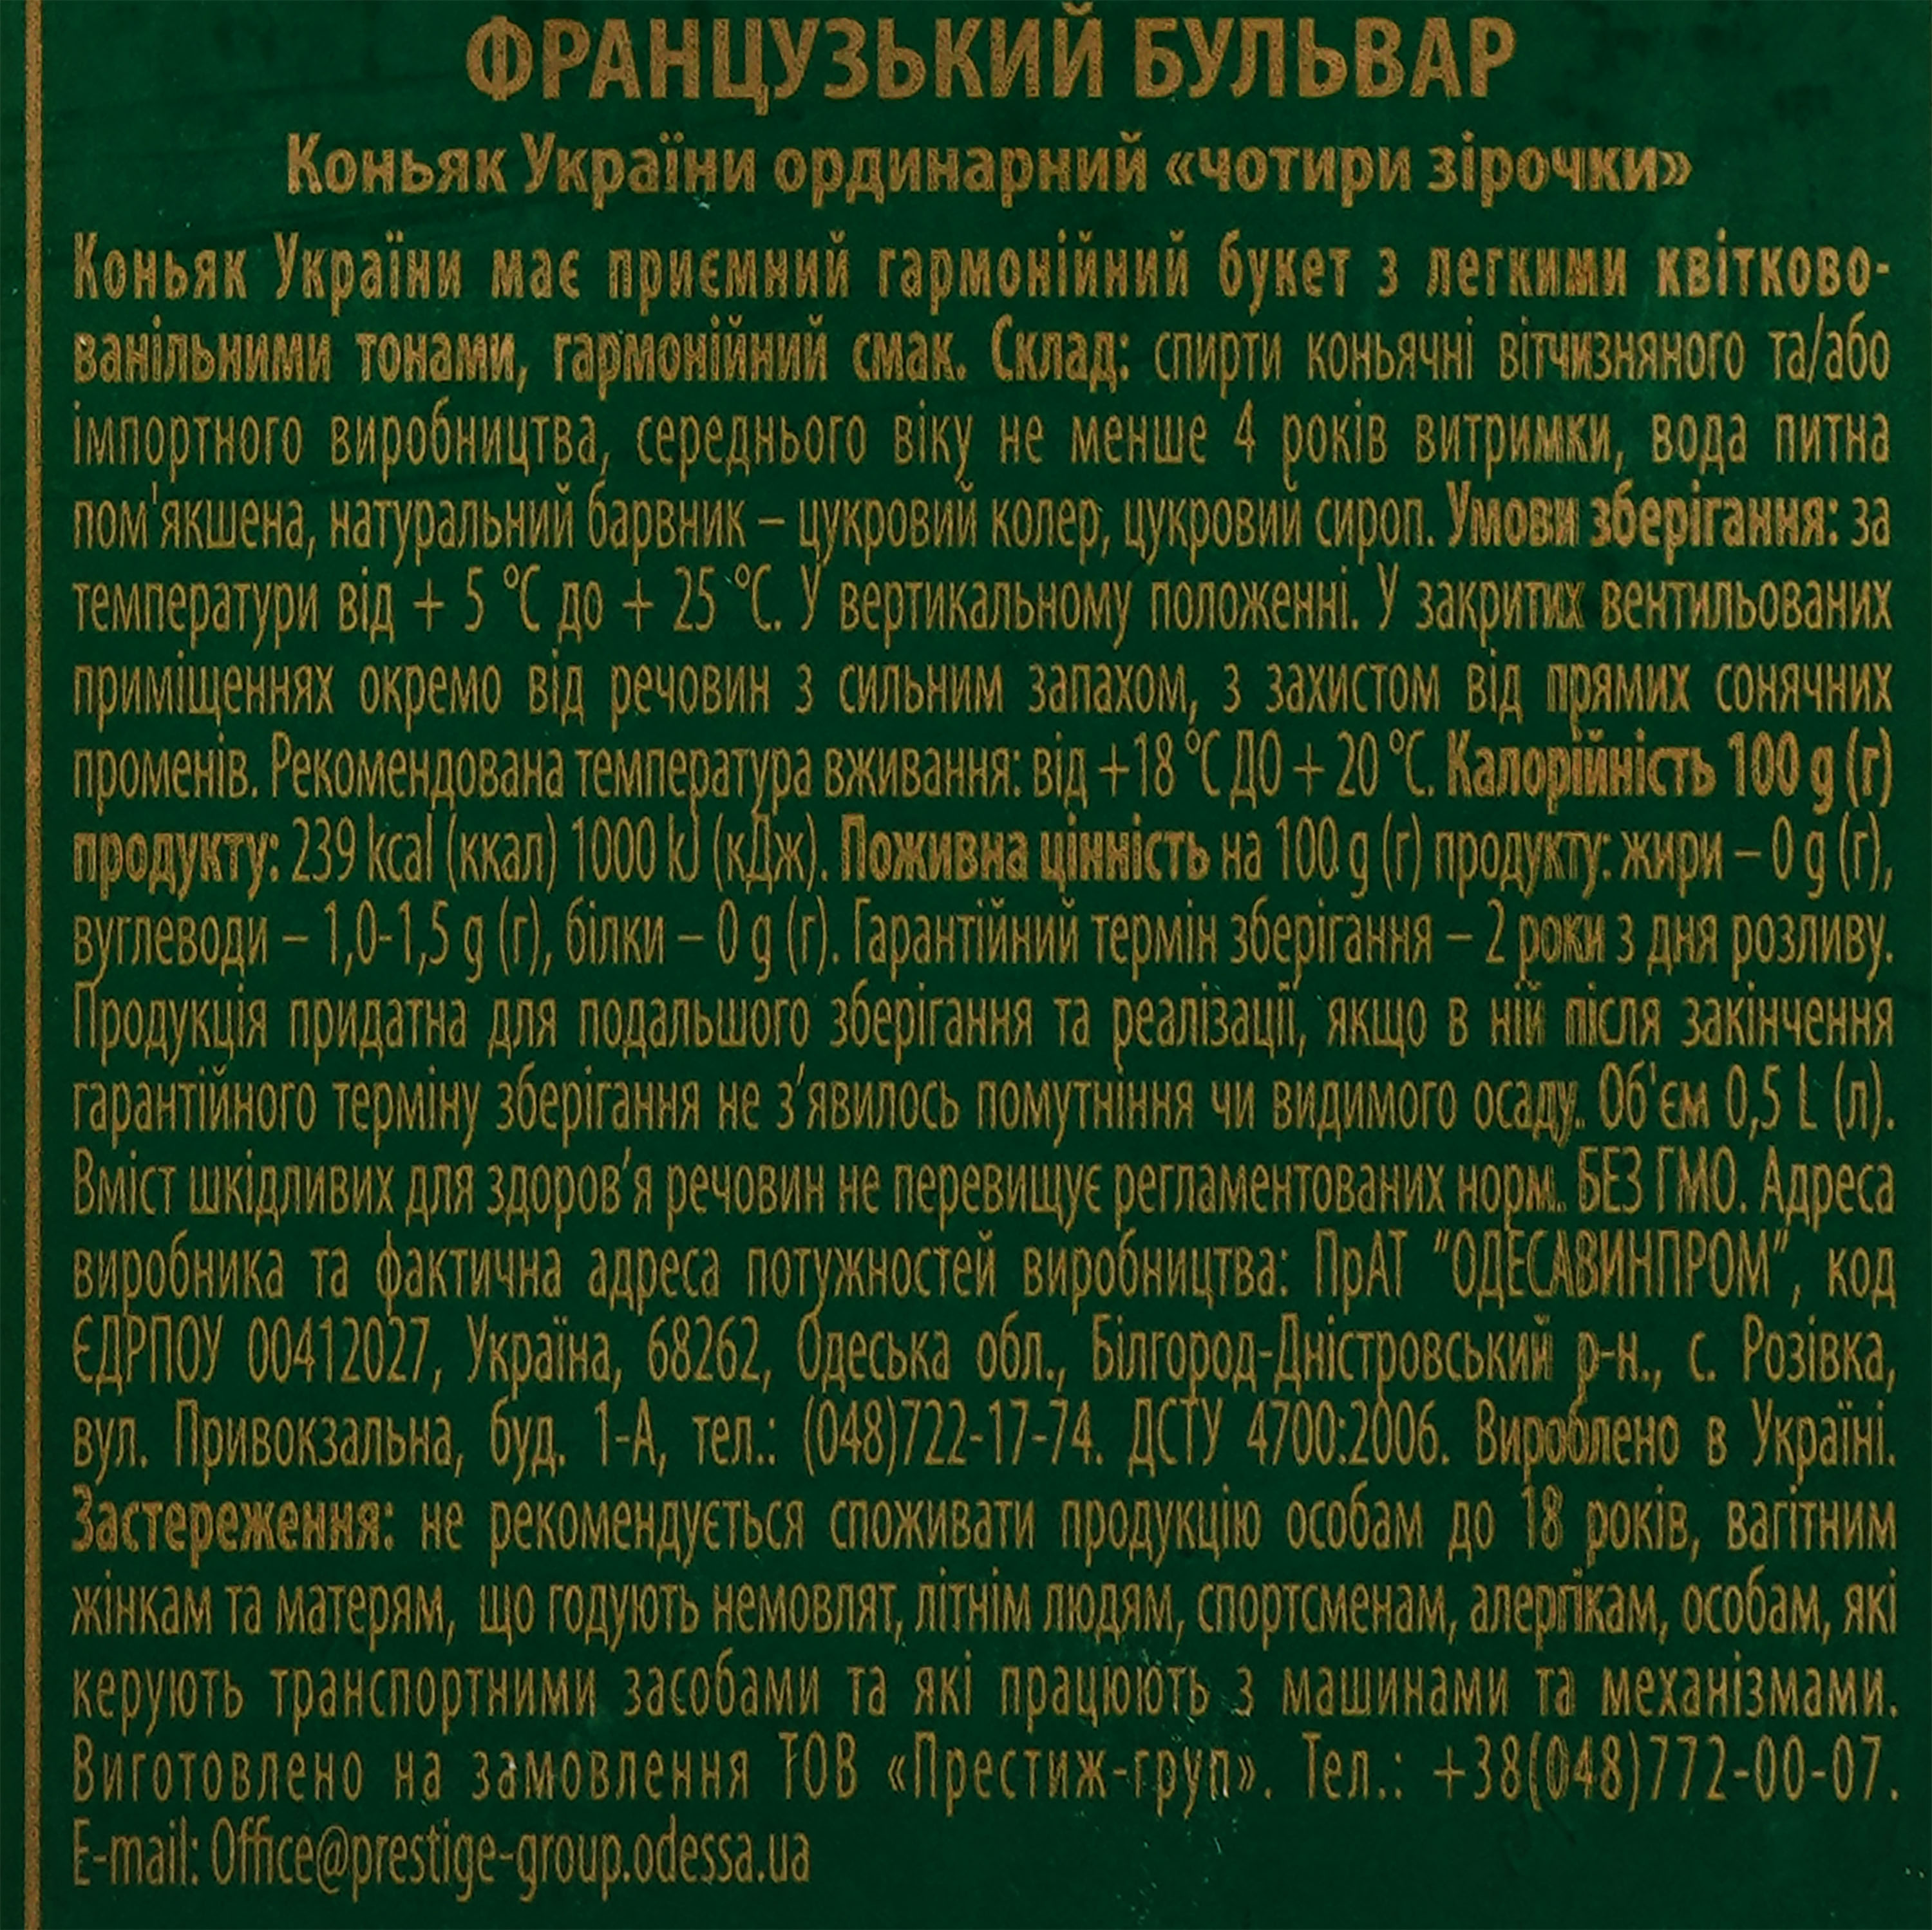 Коньяк Украины Французький Бульвар VSOP 4 звезды, 40% 0,5 л - фото 3